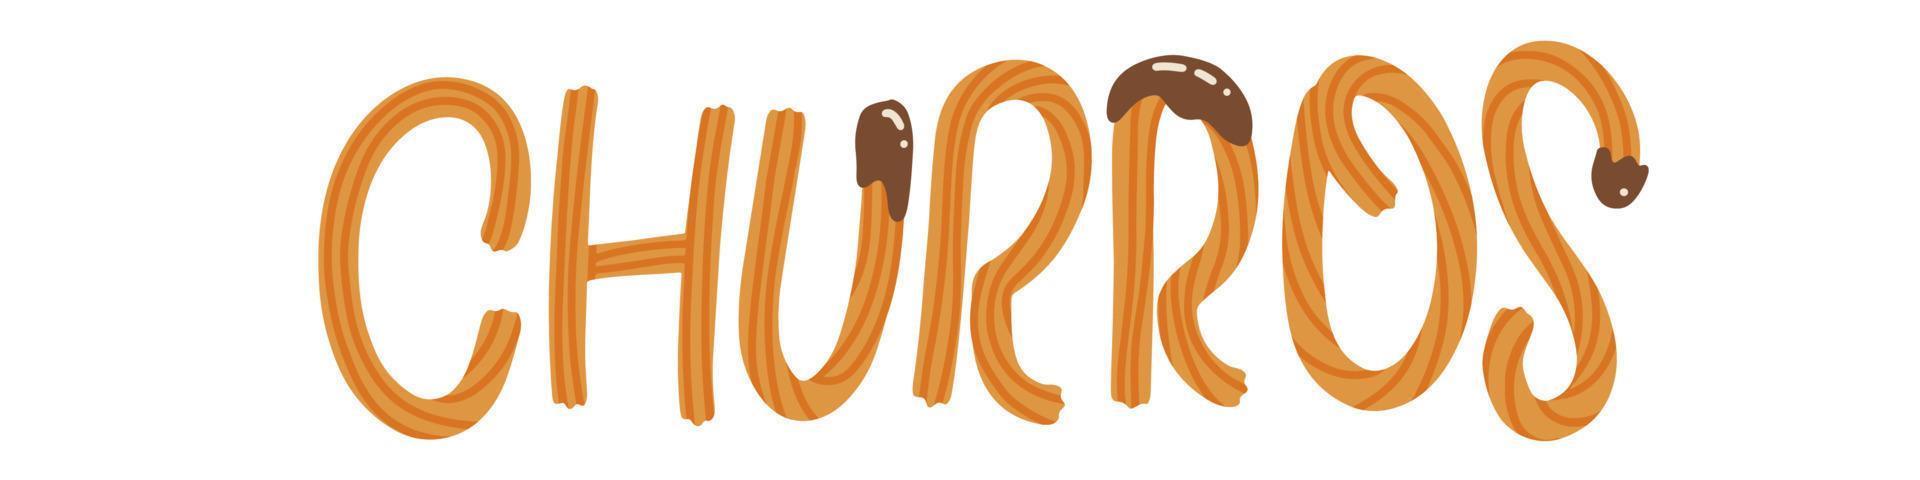 churros - y letras dibujadas hechas con palitos de churros y salsa de chocolate. ilustración plana vectorial. vector